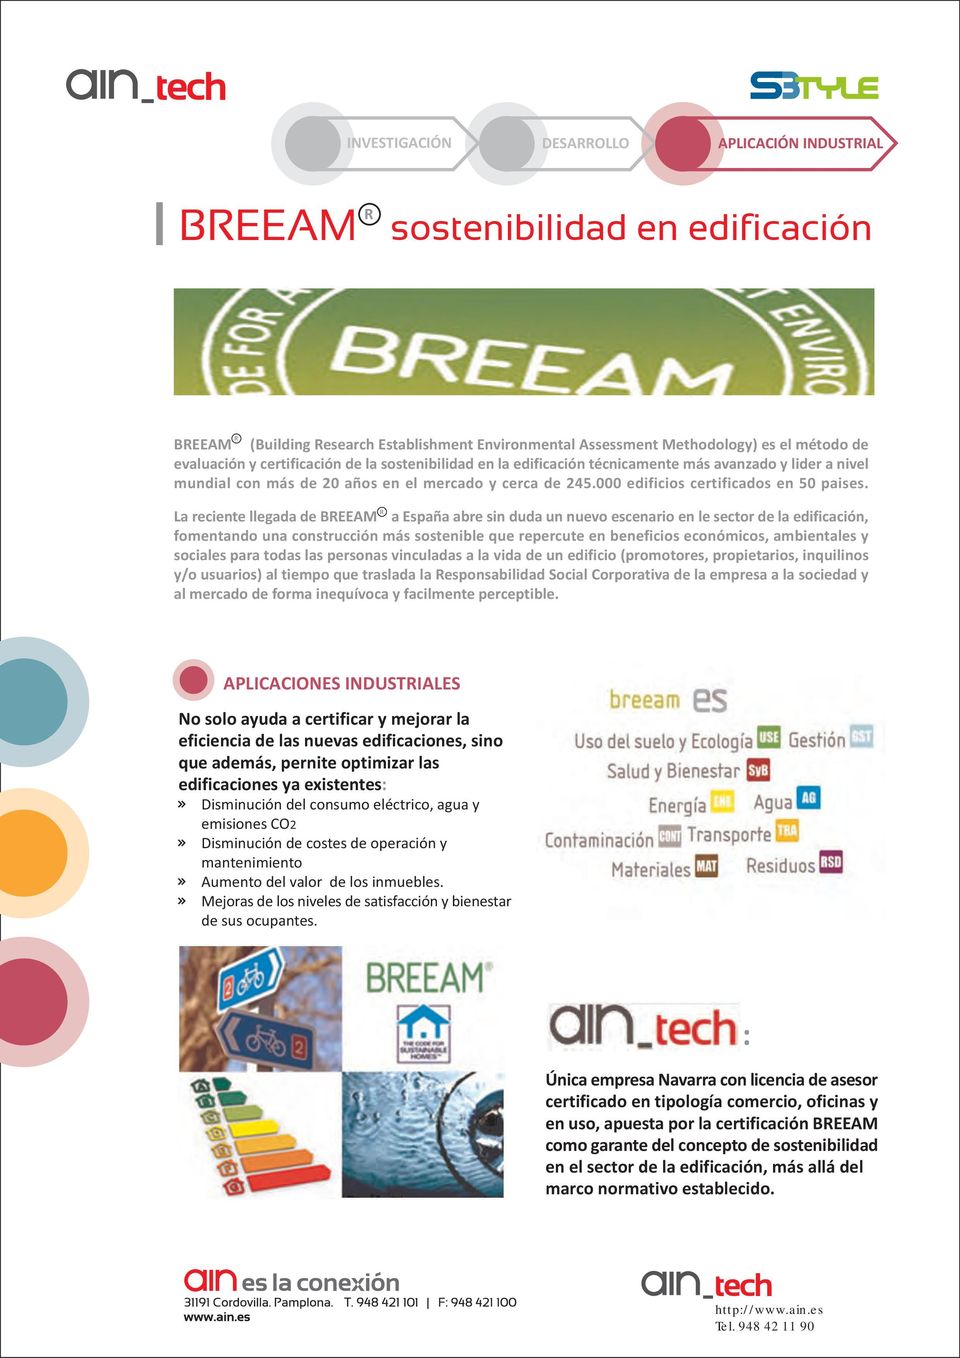 R La reciente llegada de BREEAM a España abre sin duda un nuevo escenario en le sector de la edificación, fomentando una construcción más sostenible que repercute en beneficios económicos,